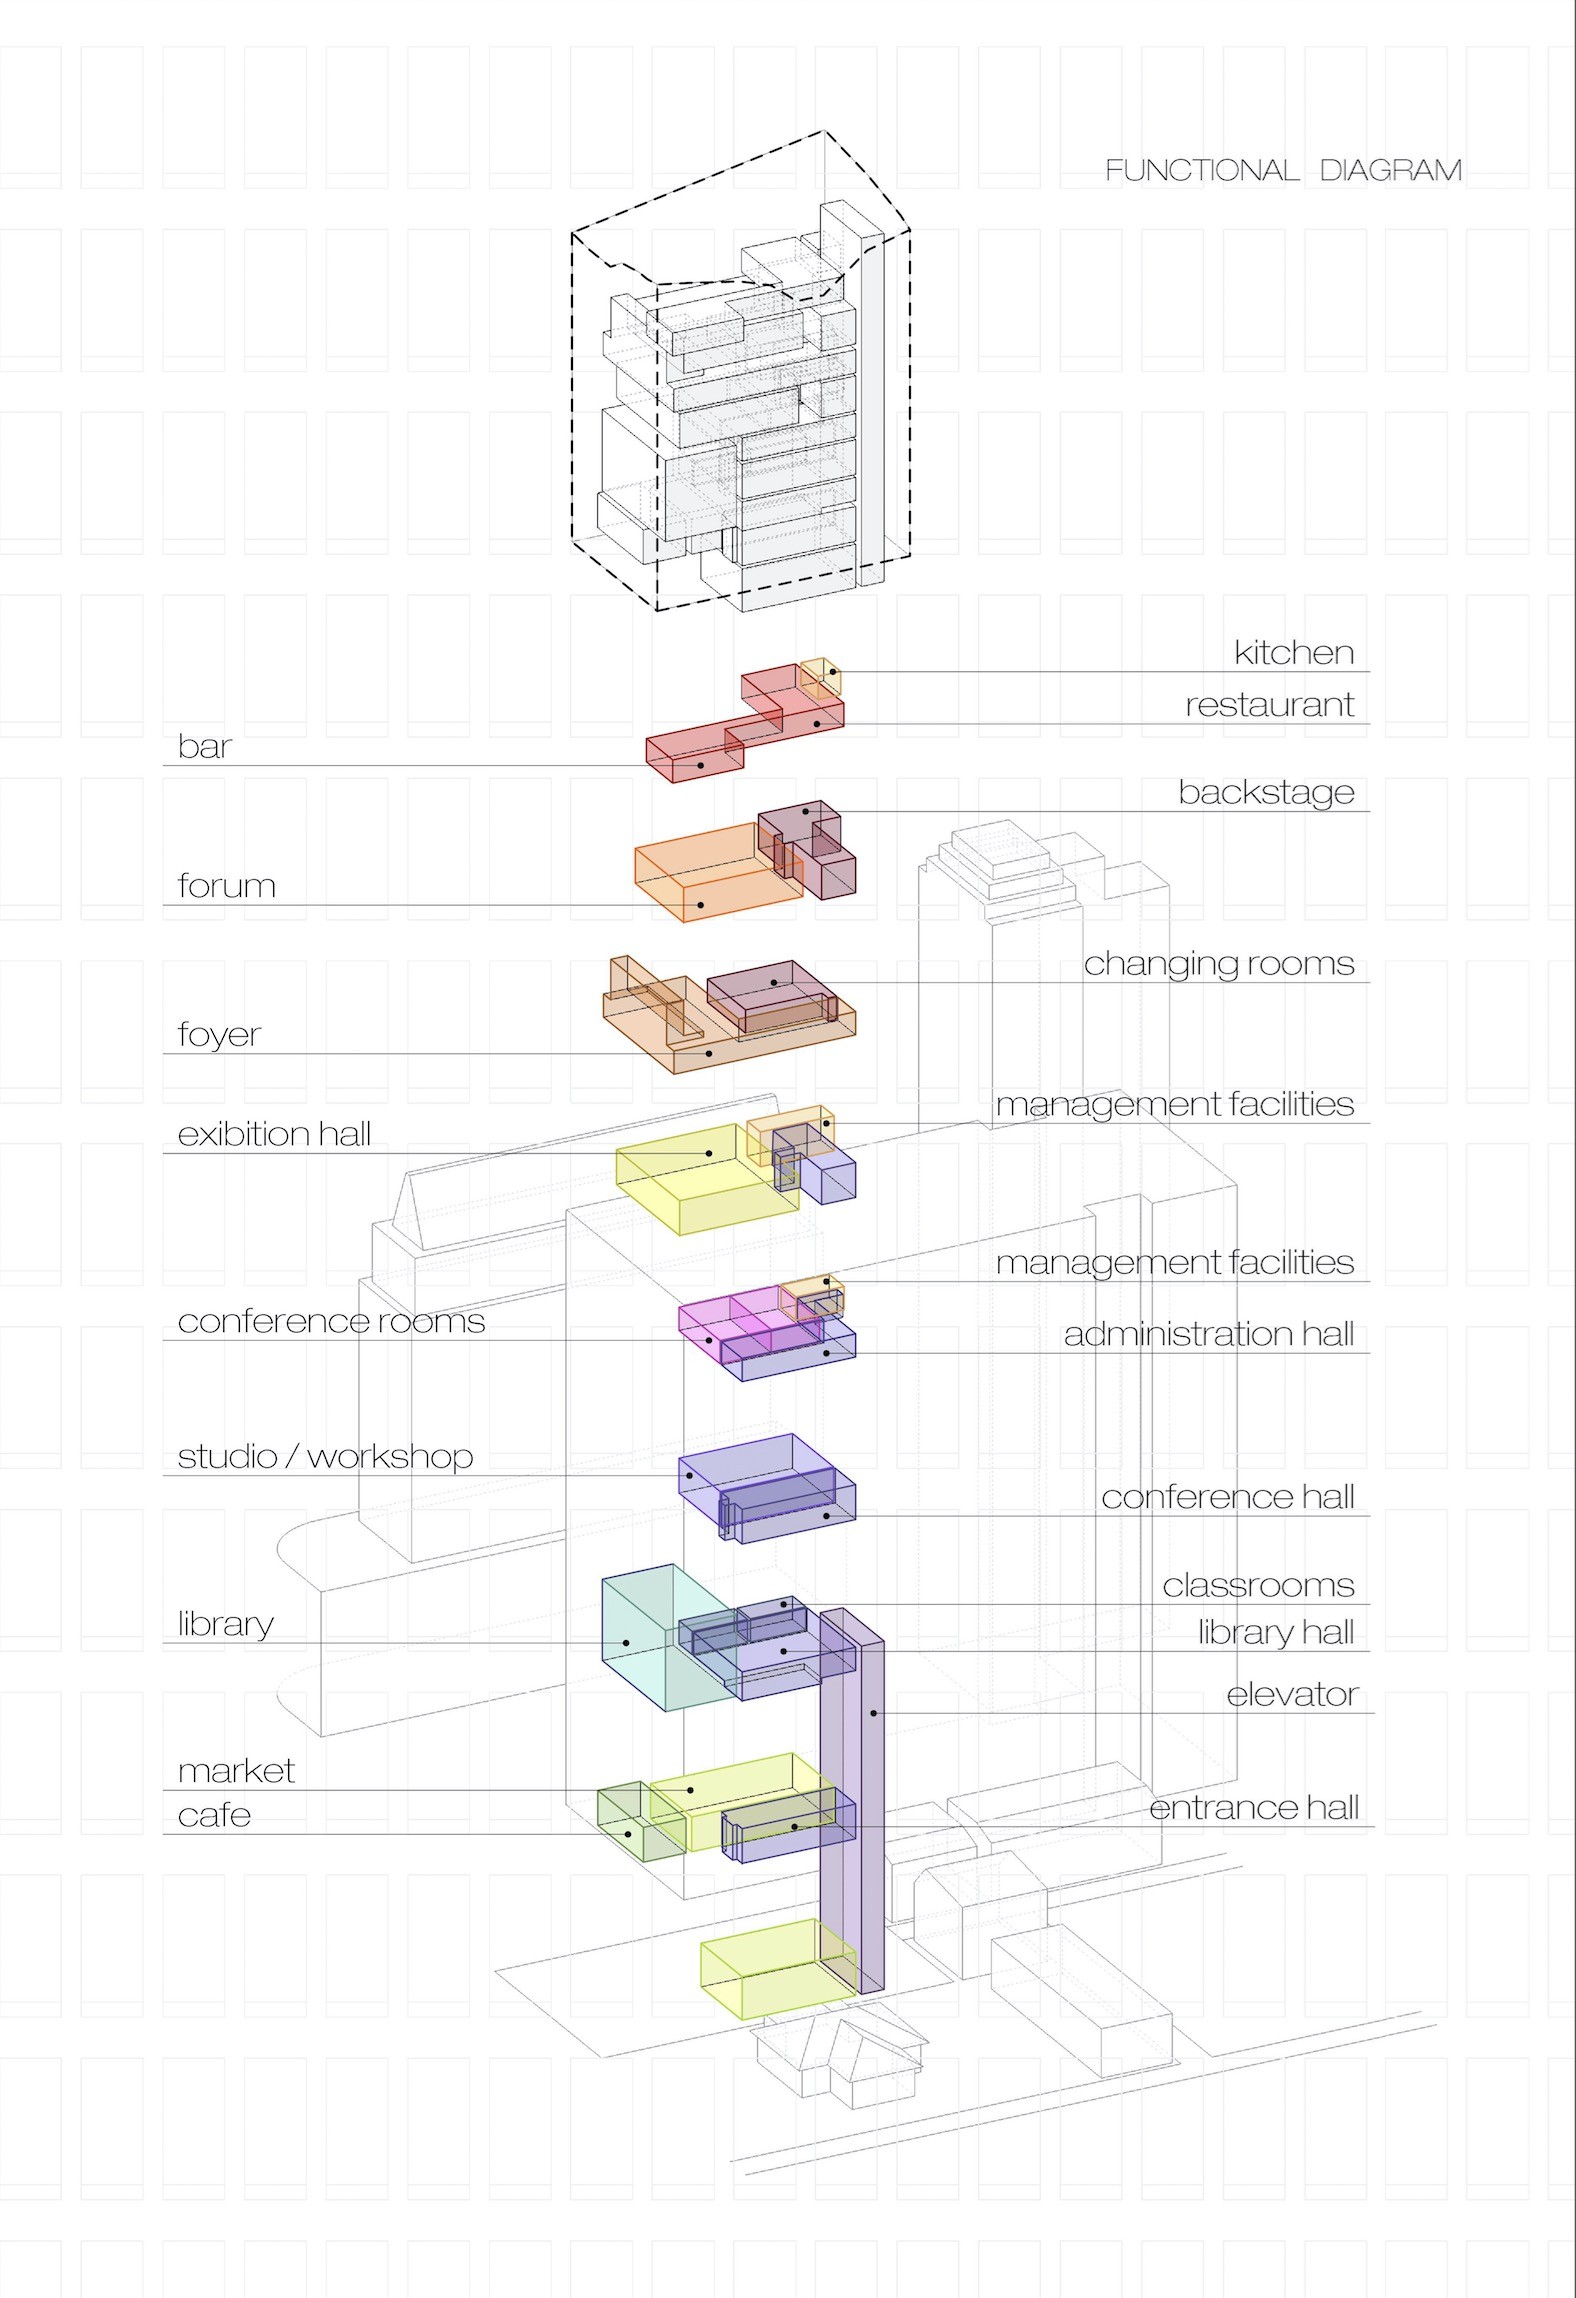 小红人风格建筑分析图 layout 制作思路与技巧分享